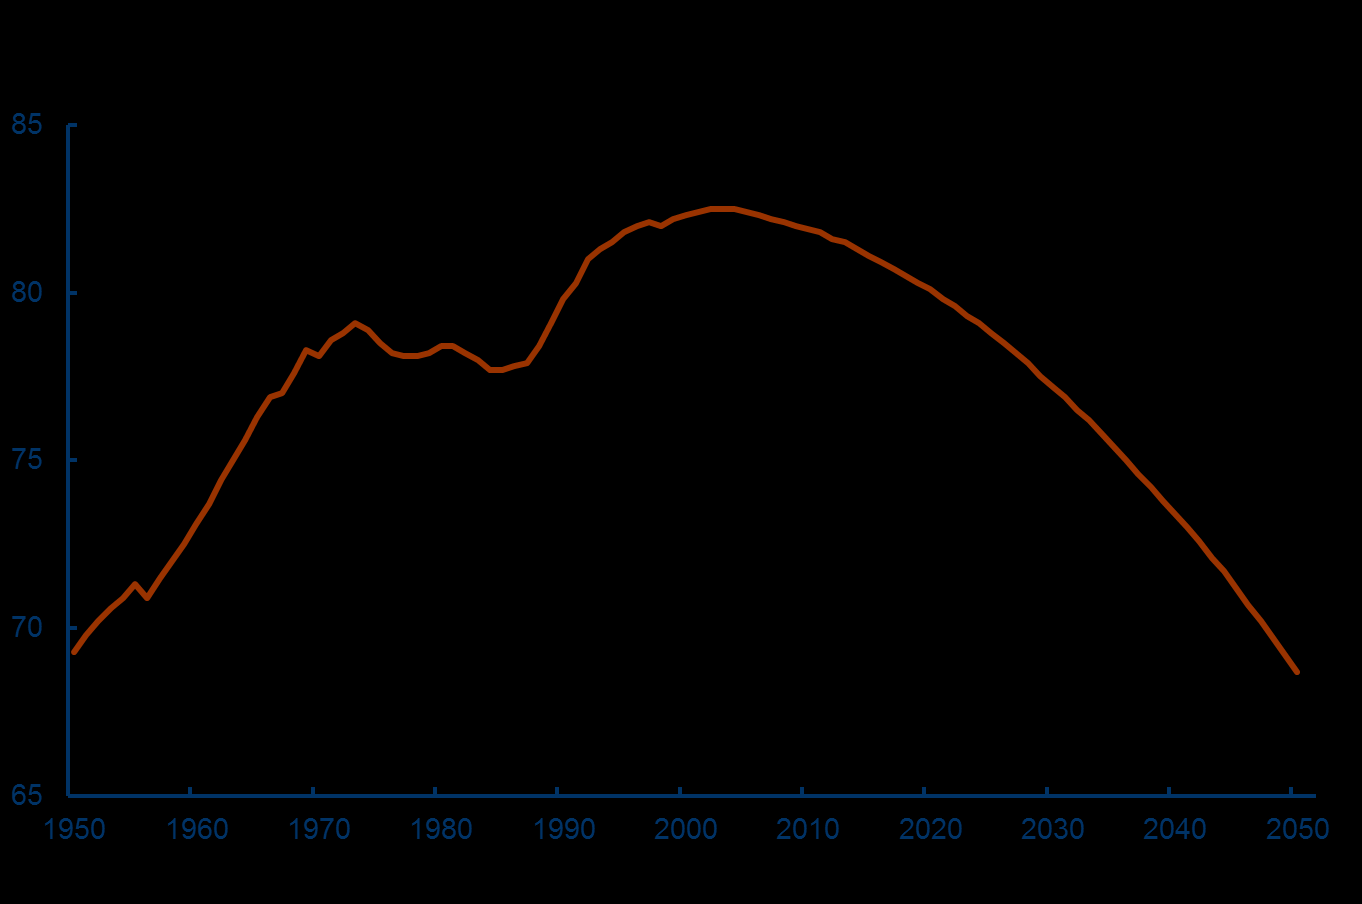 Einwohnerzahlen in Deutschland 1950 bis 2050 82,3